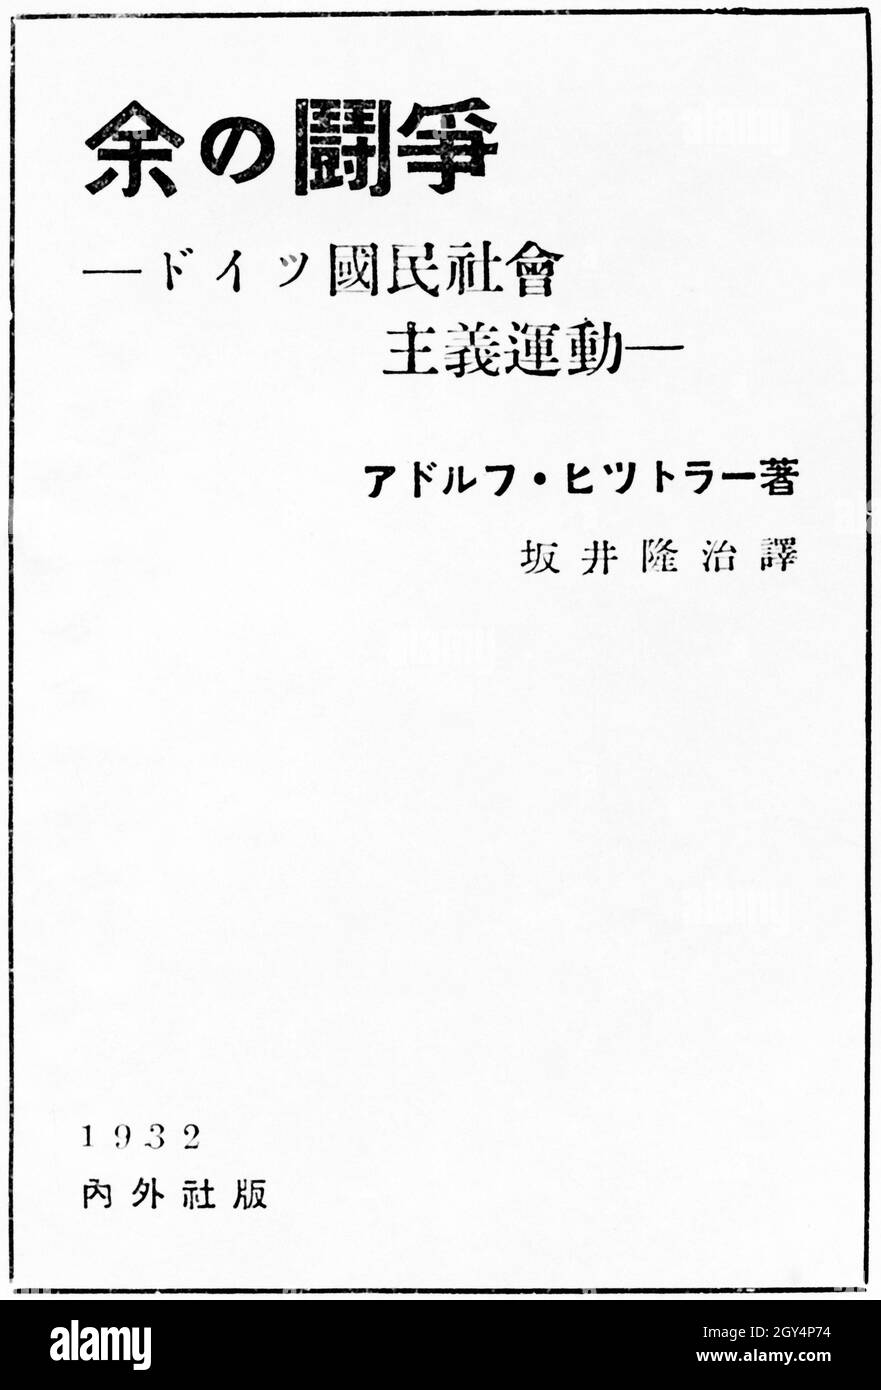 'L'œuvre idéologique d'Adolf Hitler 'Mein Kampf' ici comme couverture de livre d'une traduction japonaise.[traduction automatique]' Banque D'Images